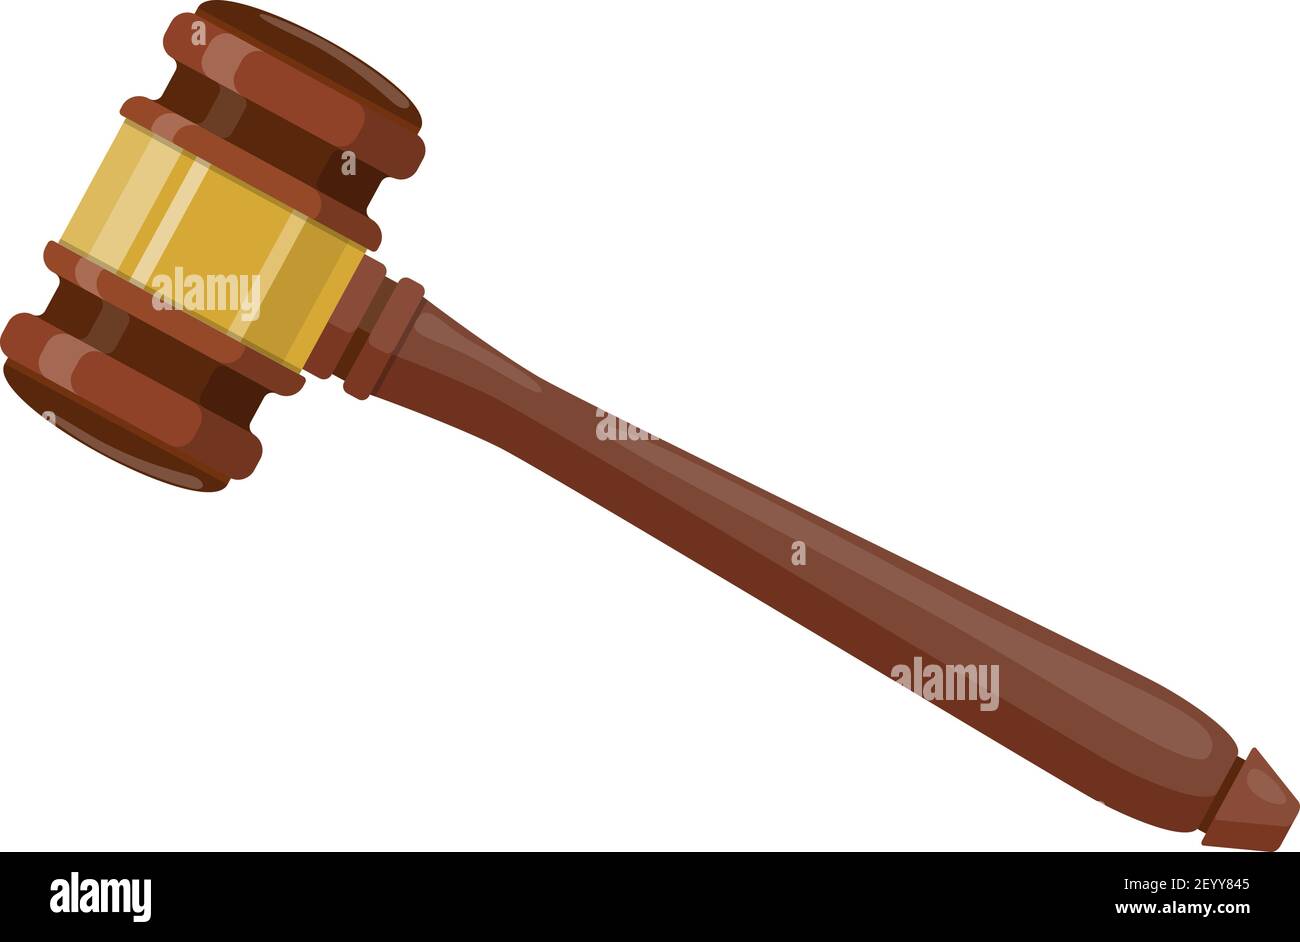 Wooden judge ceremonial hammer Stock Vector